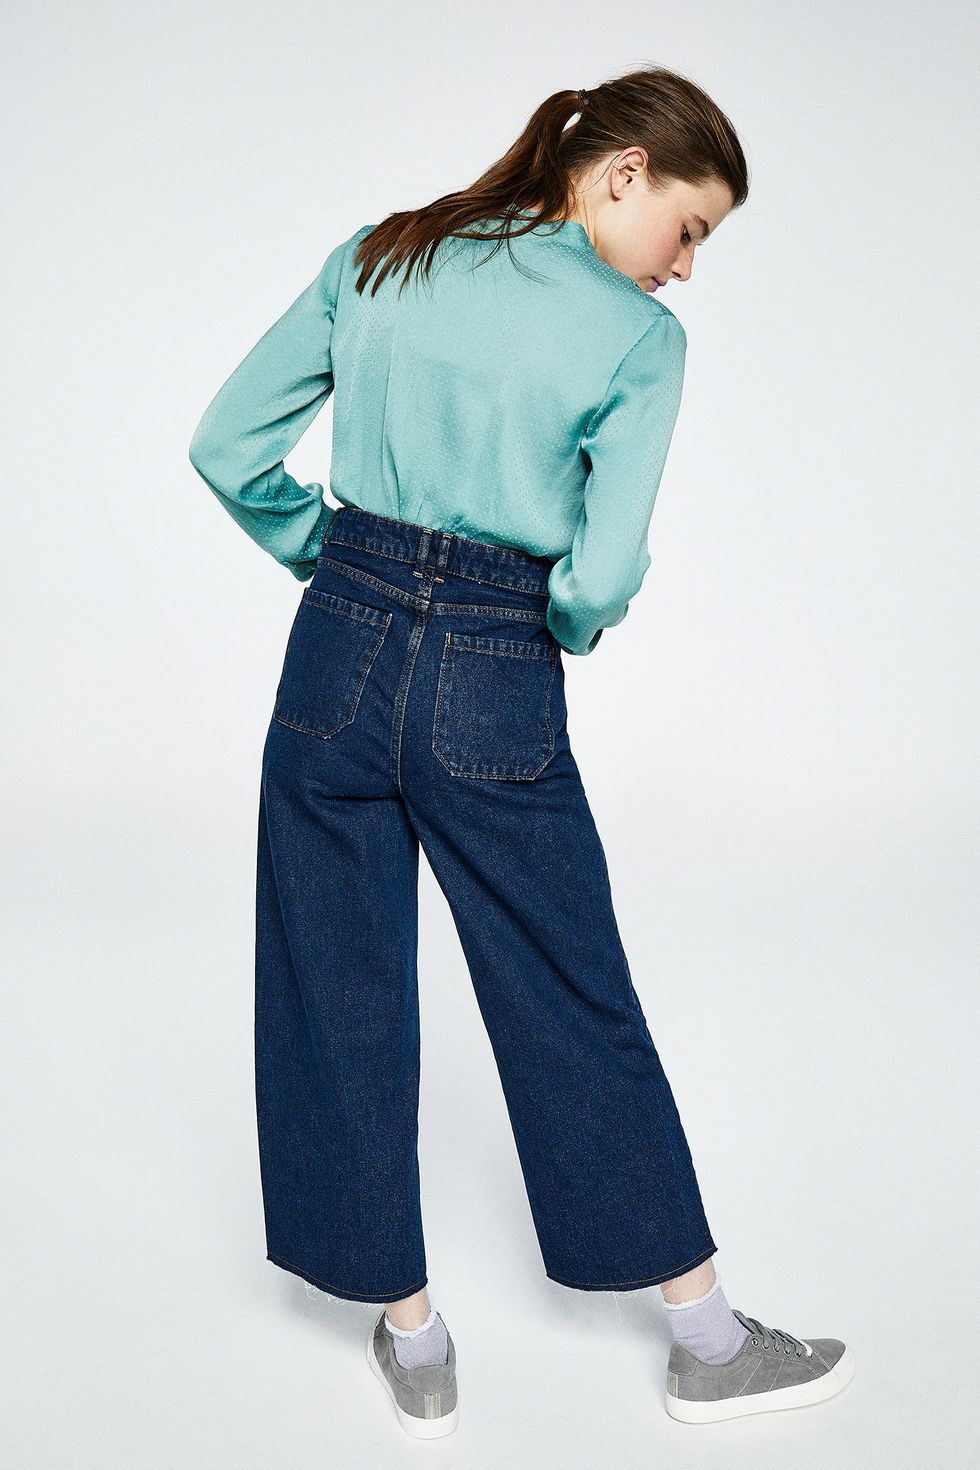 Estos de Sfera son perfectos para cualquier silueta y cualquier del día - Sfera tiene los jeans ideales para cualquier mujer